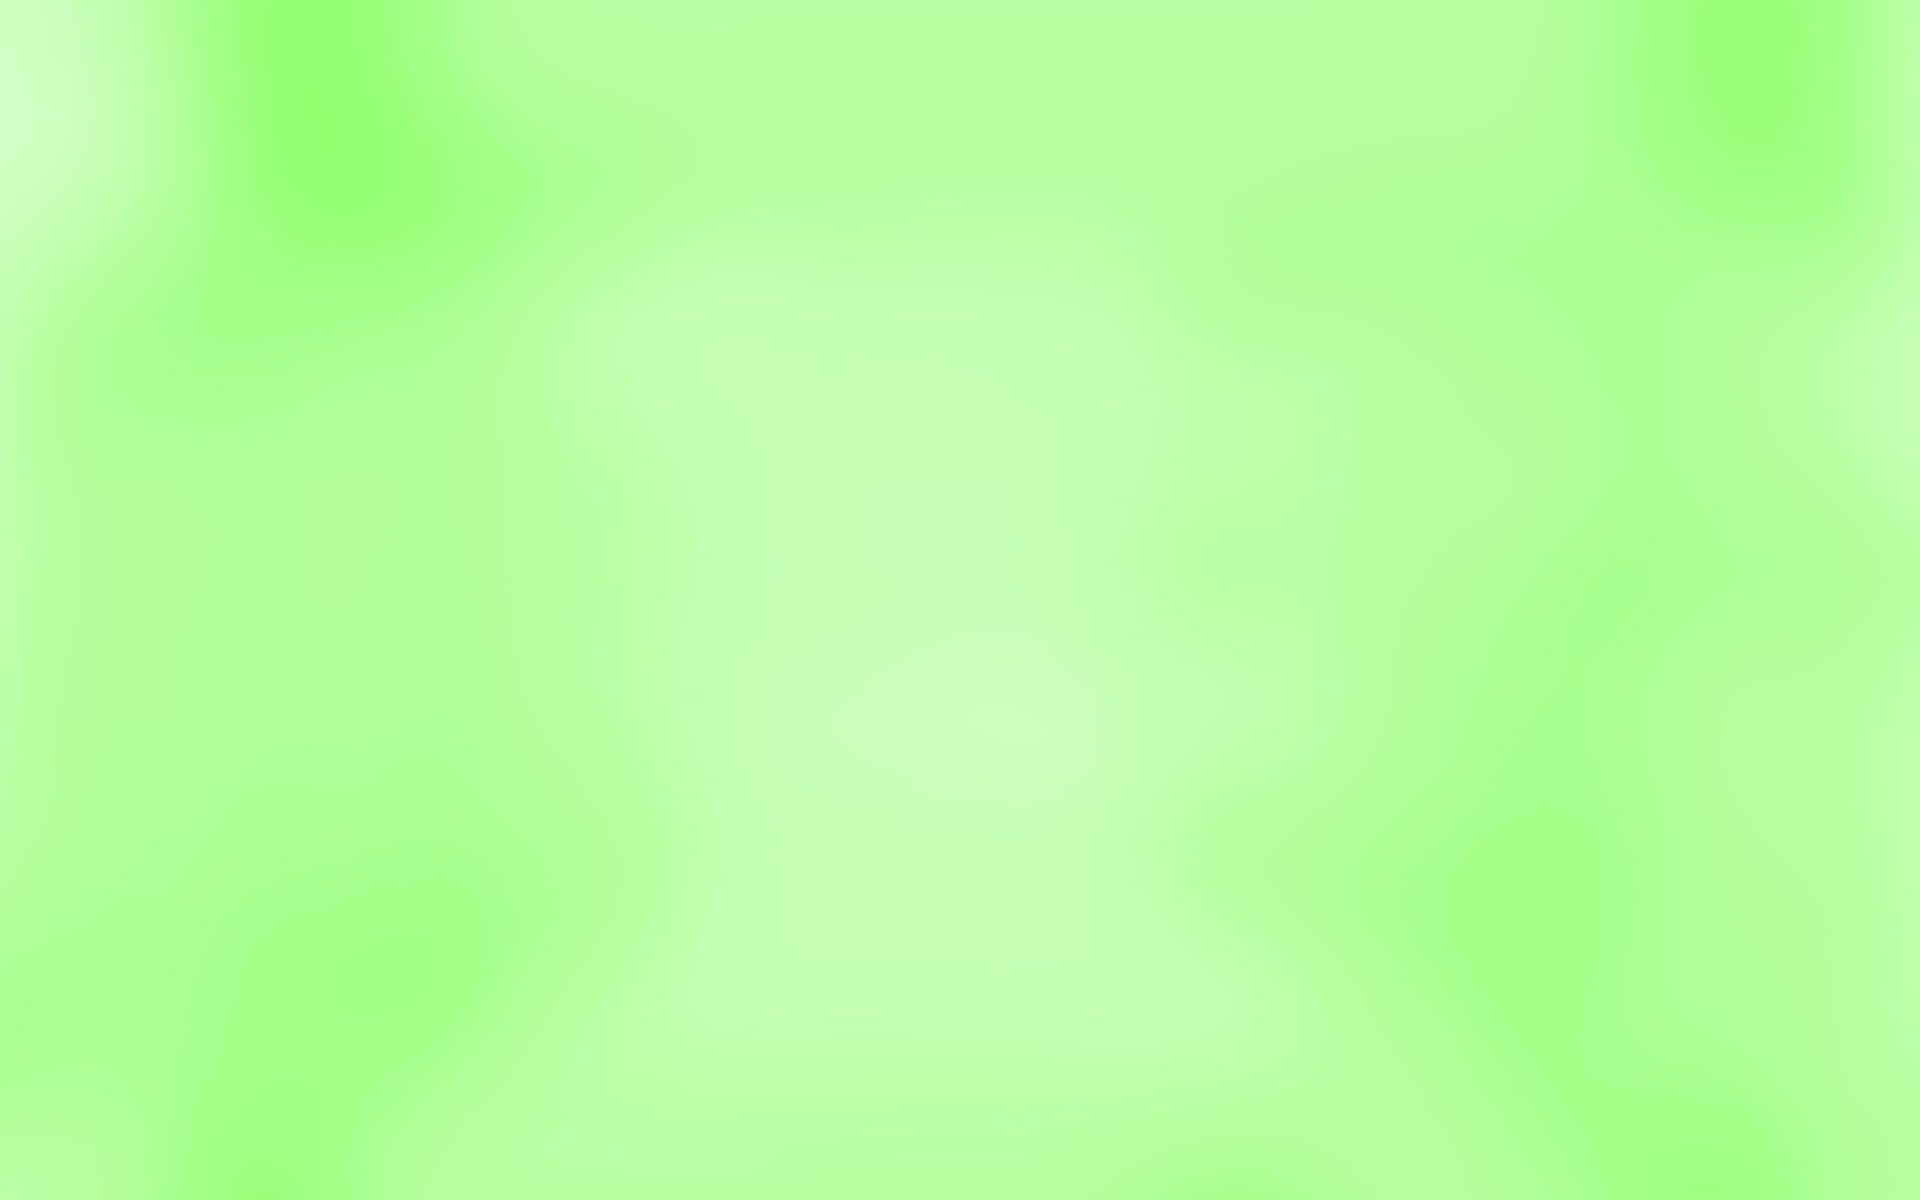 Fondode Pantalla Degradado En Tonos De Verde Vibrante. Fondo de pantalla